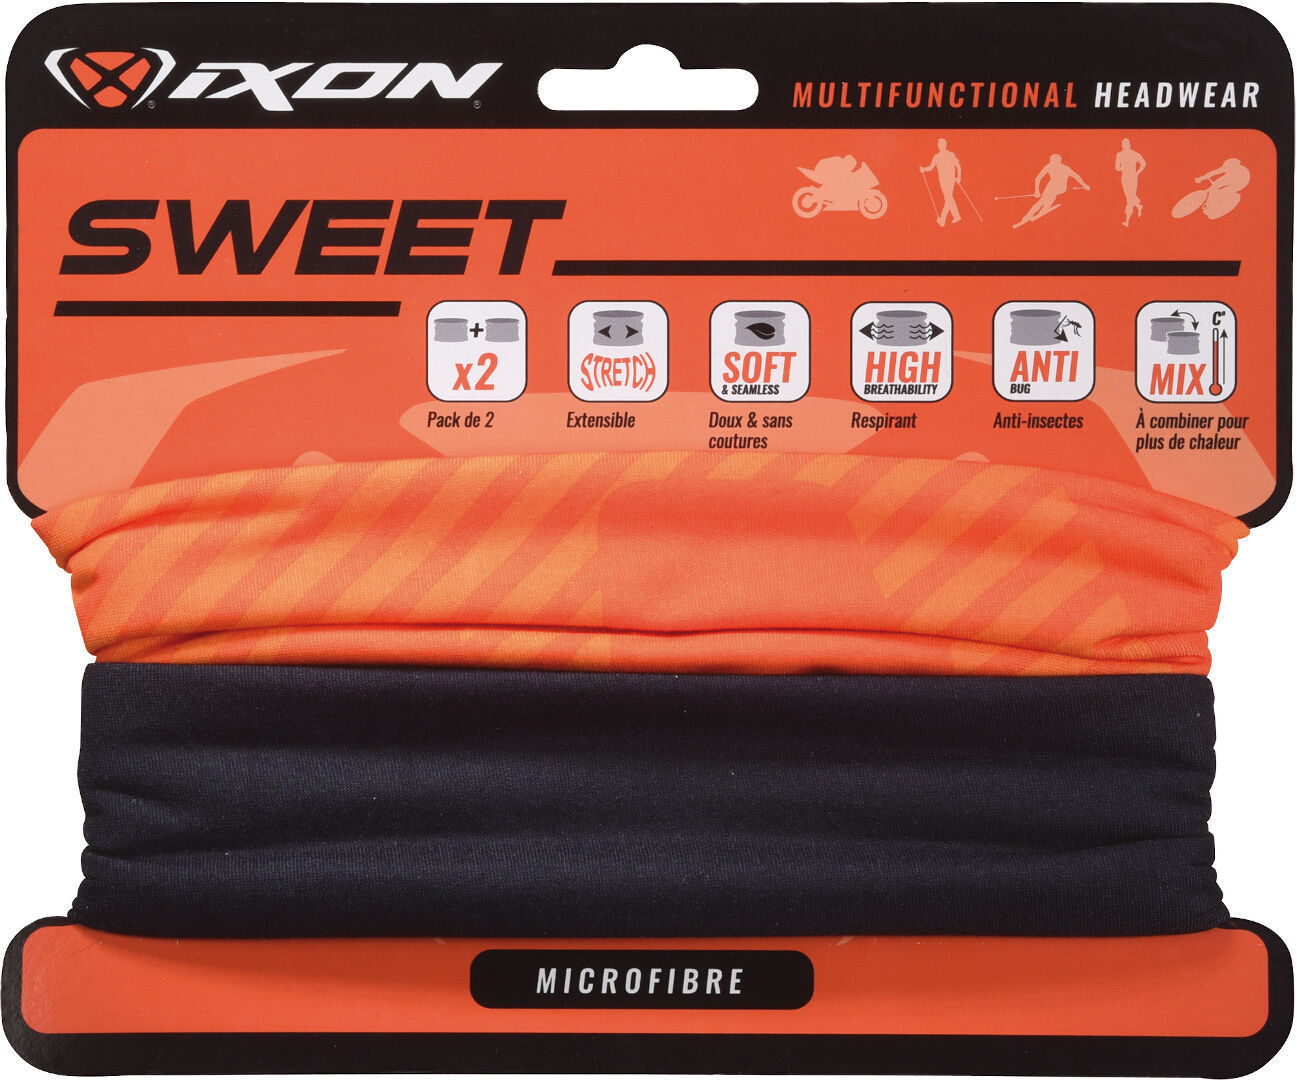 Ixon Sweet XLogo Headwear multifuncional